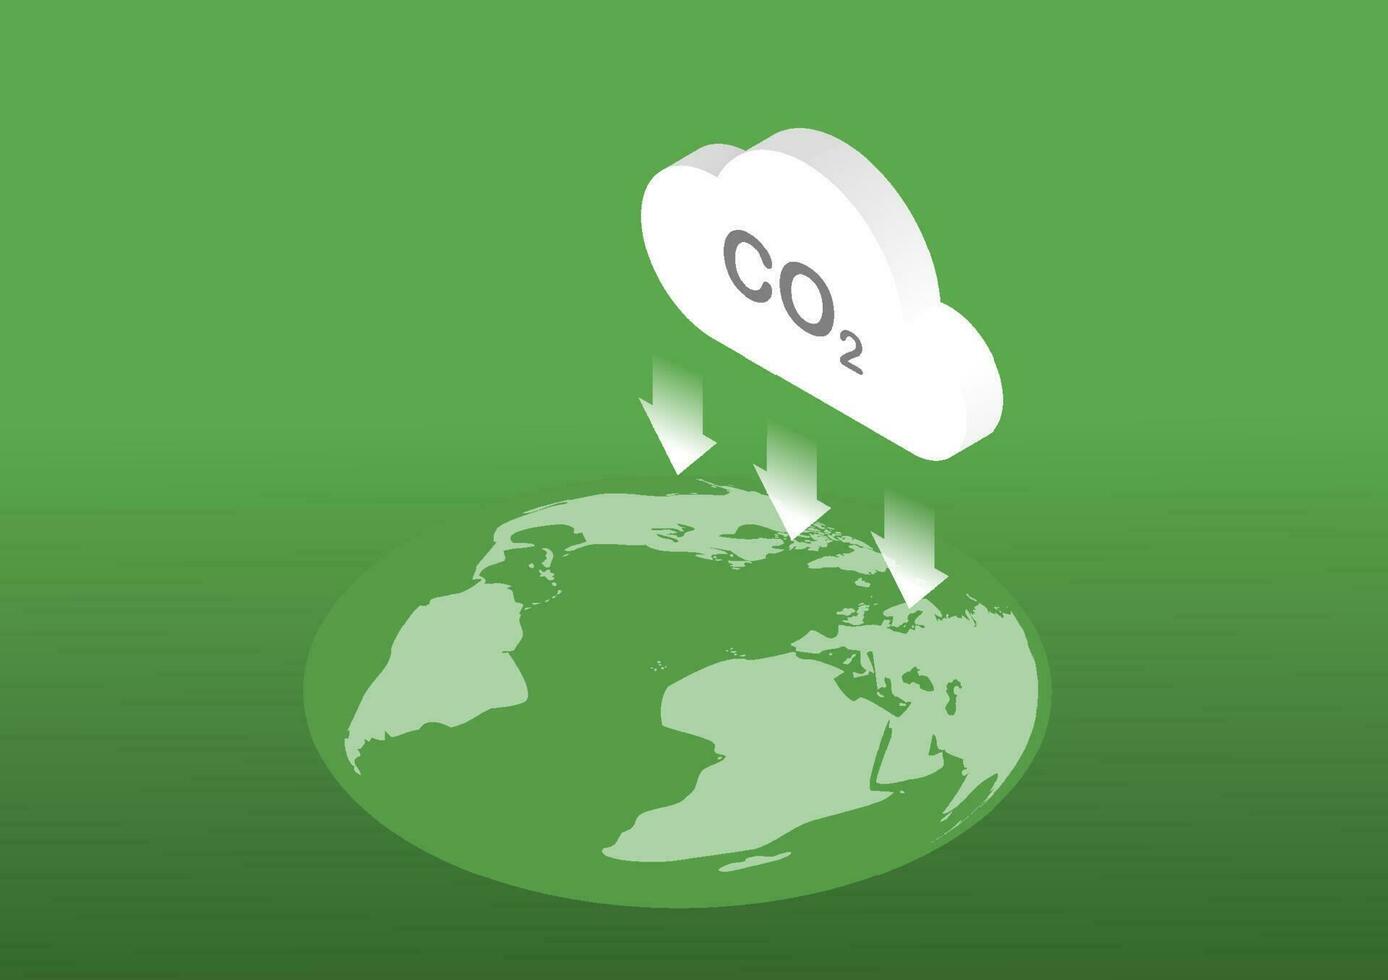 réduction de gaz carbonique émission à Terre. vecteur